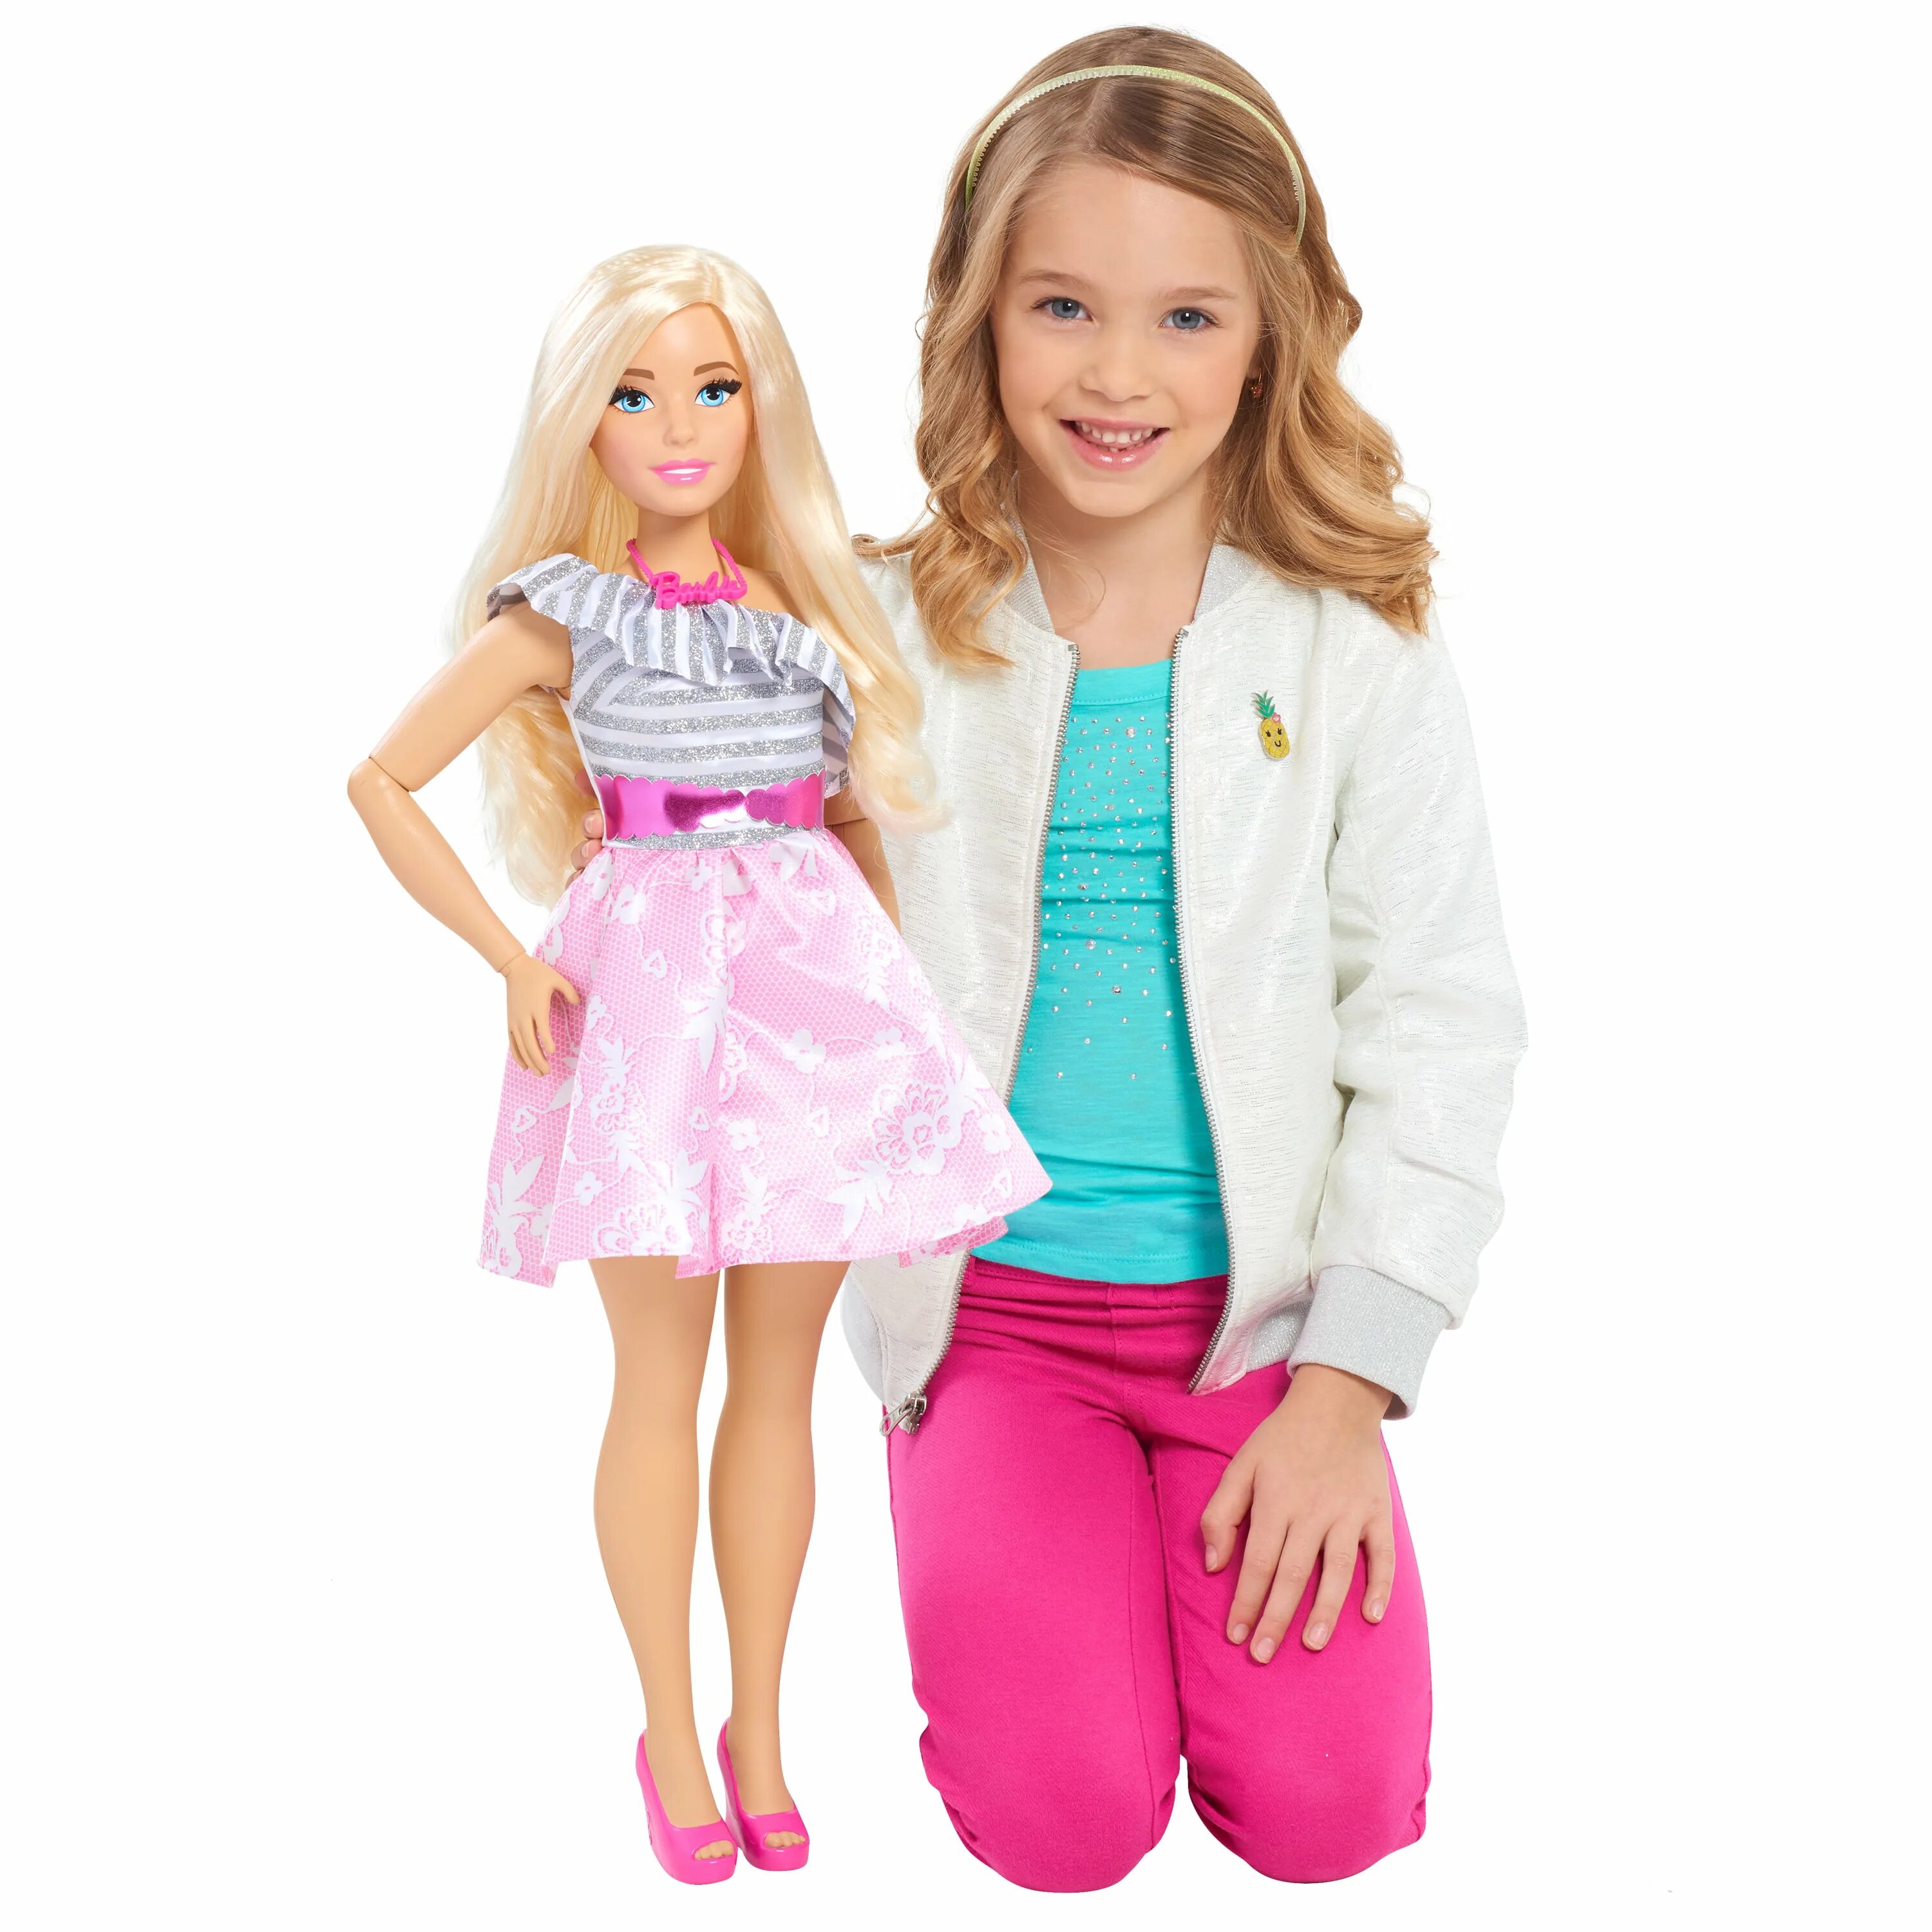 Кукла Barbie подружка ростовая, 71 см, 62610. Кукла Барби ростовая 71 см. Кукла Барби 70 см. Кукла Барби 100 см. Хочу большие куклы